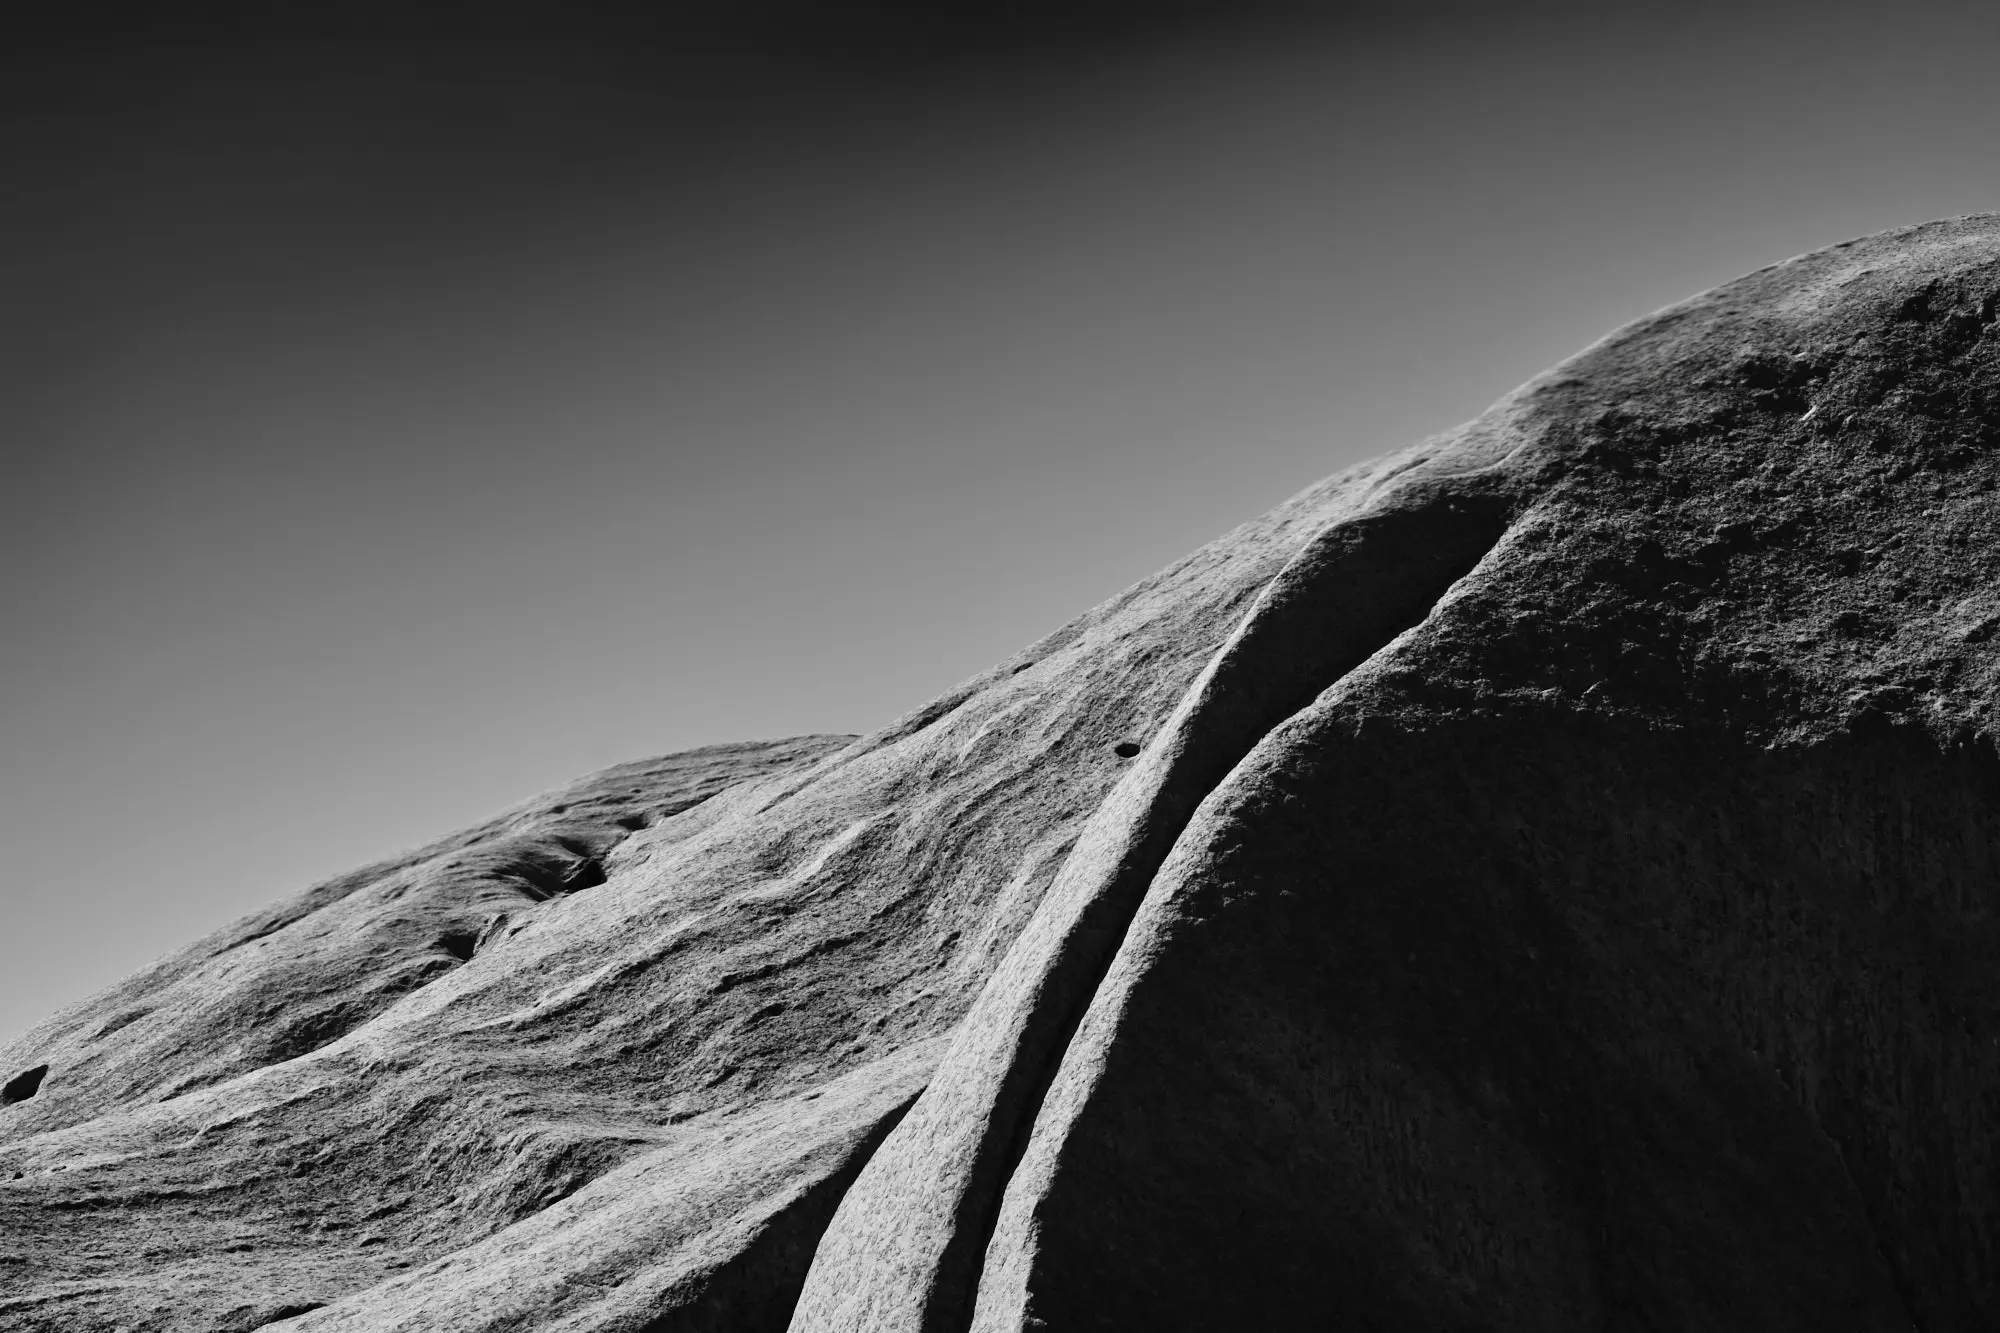 Ayers Rock - Uluru NT